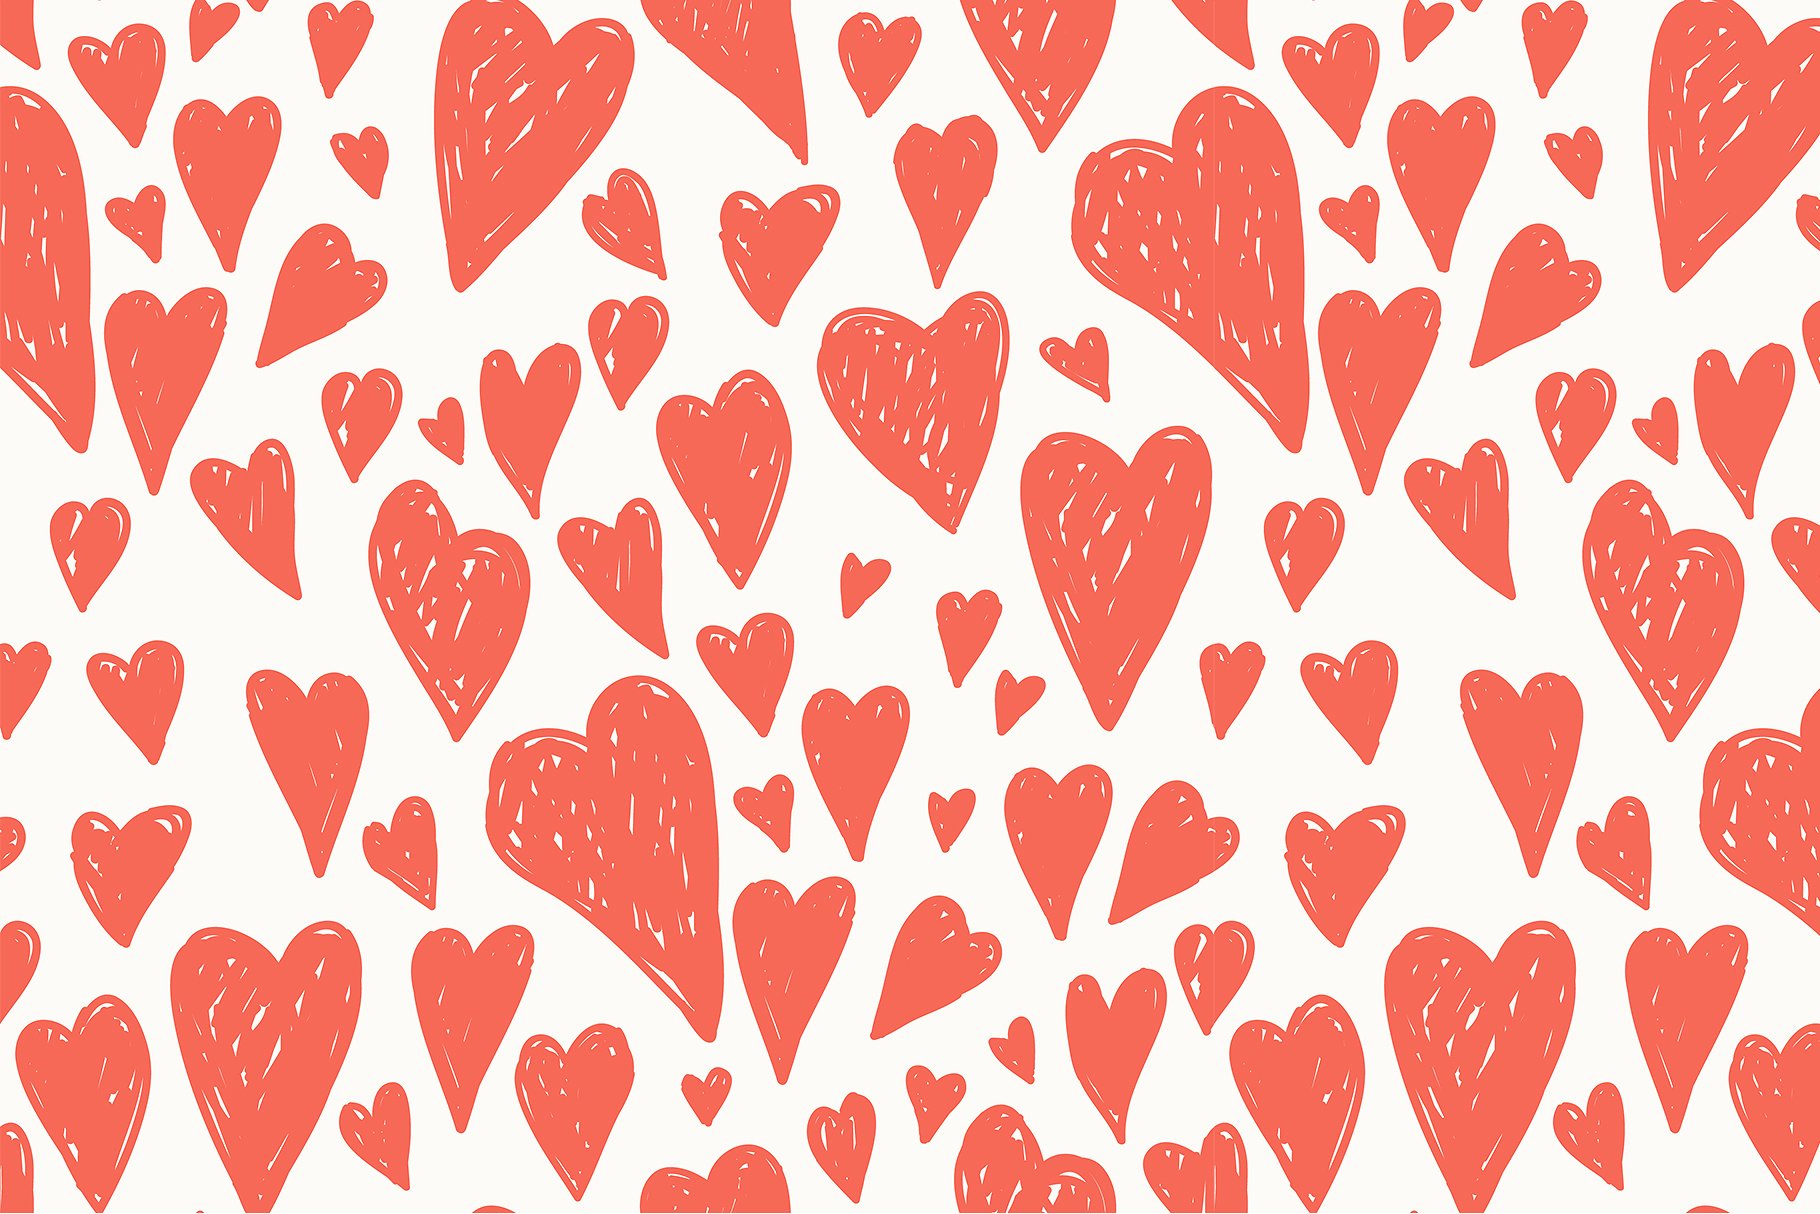 心形无缝纹理集 Hearts Seamless Patterns Set插图7